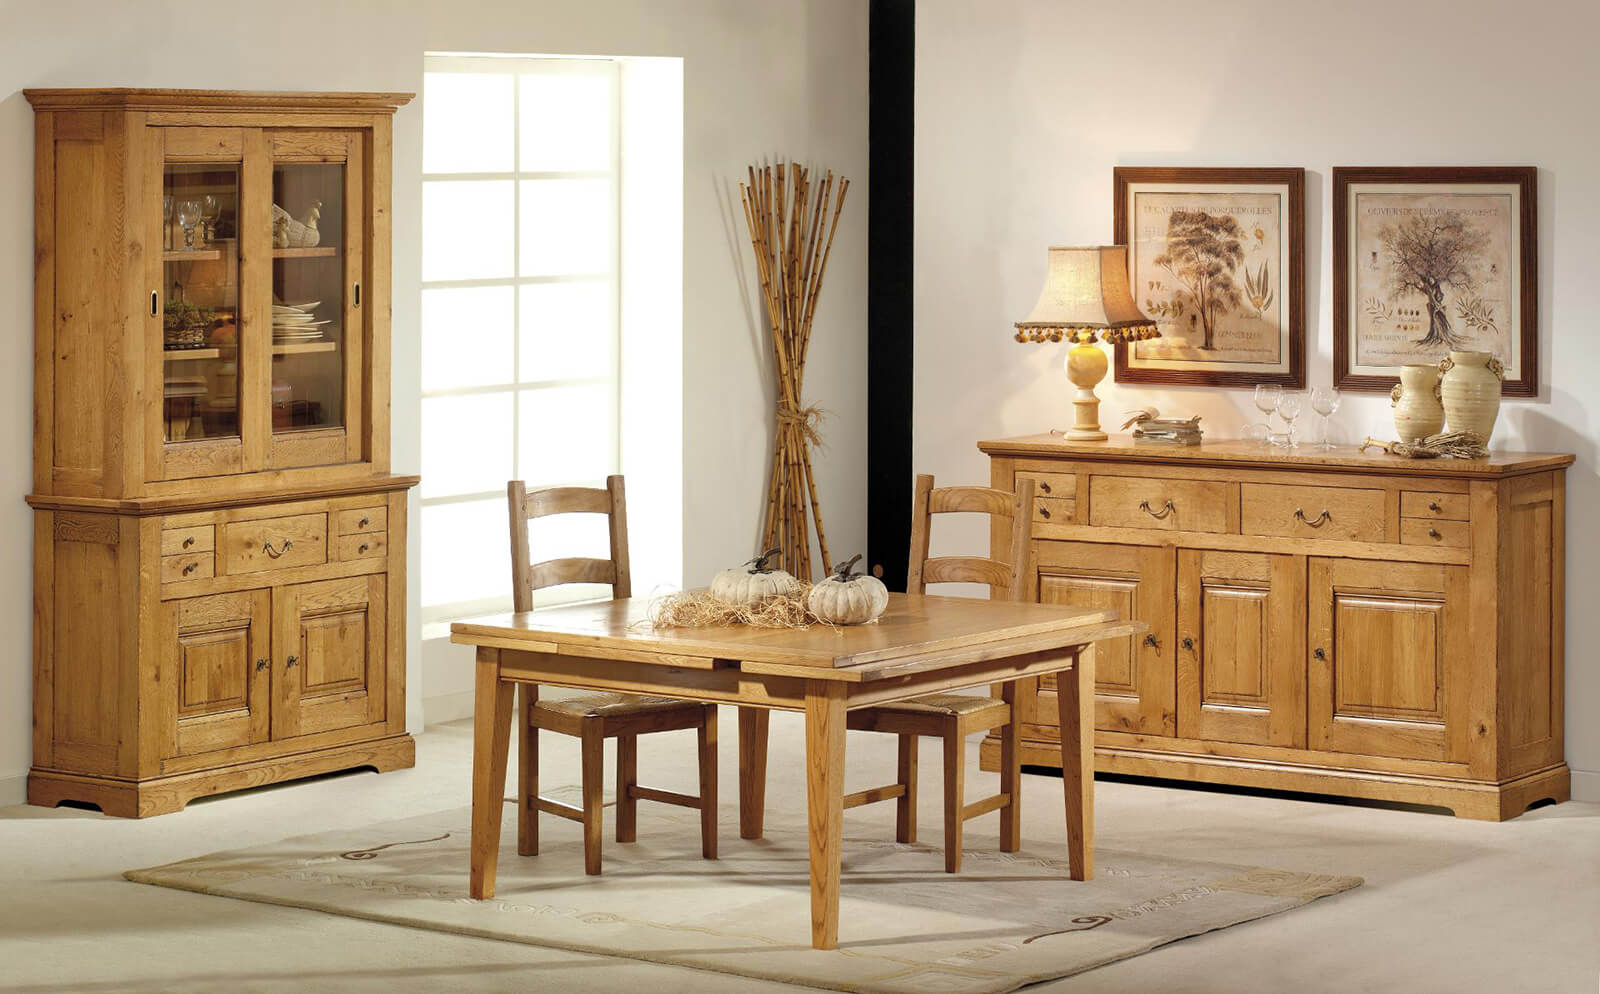 Ensemble de meubles table et 4 chaises de rangement Pocket en bois – Naturel